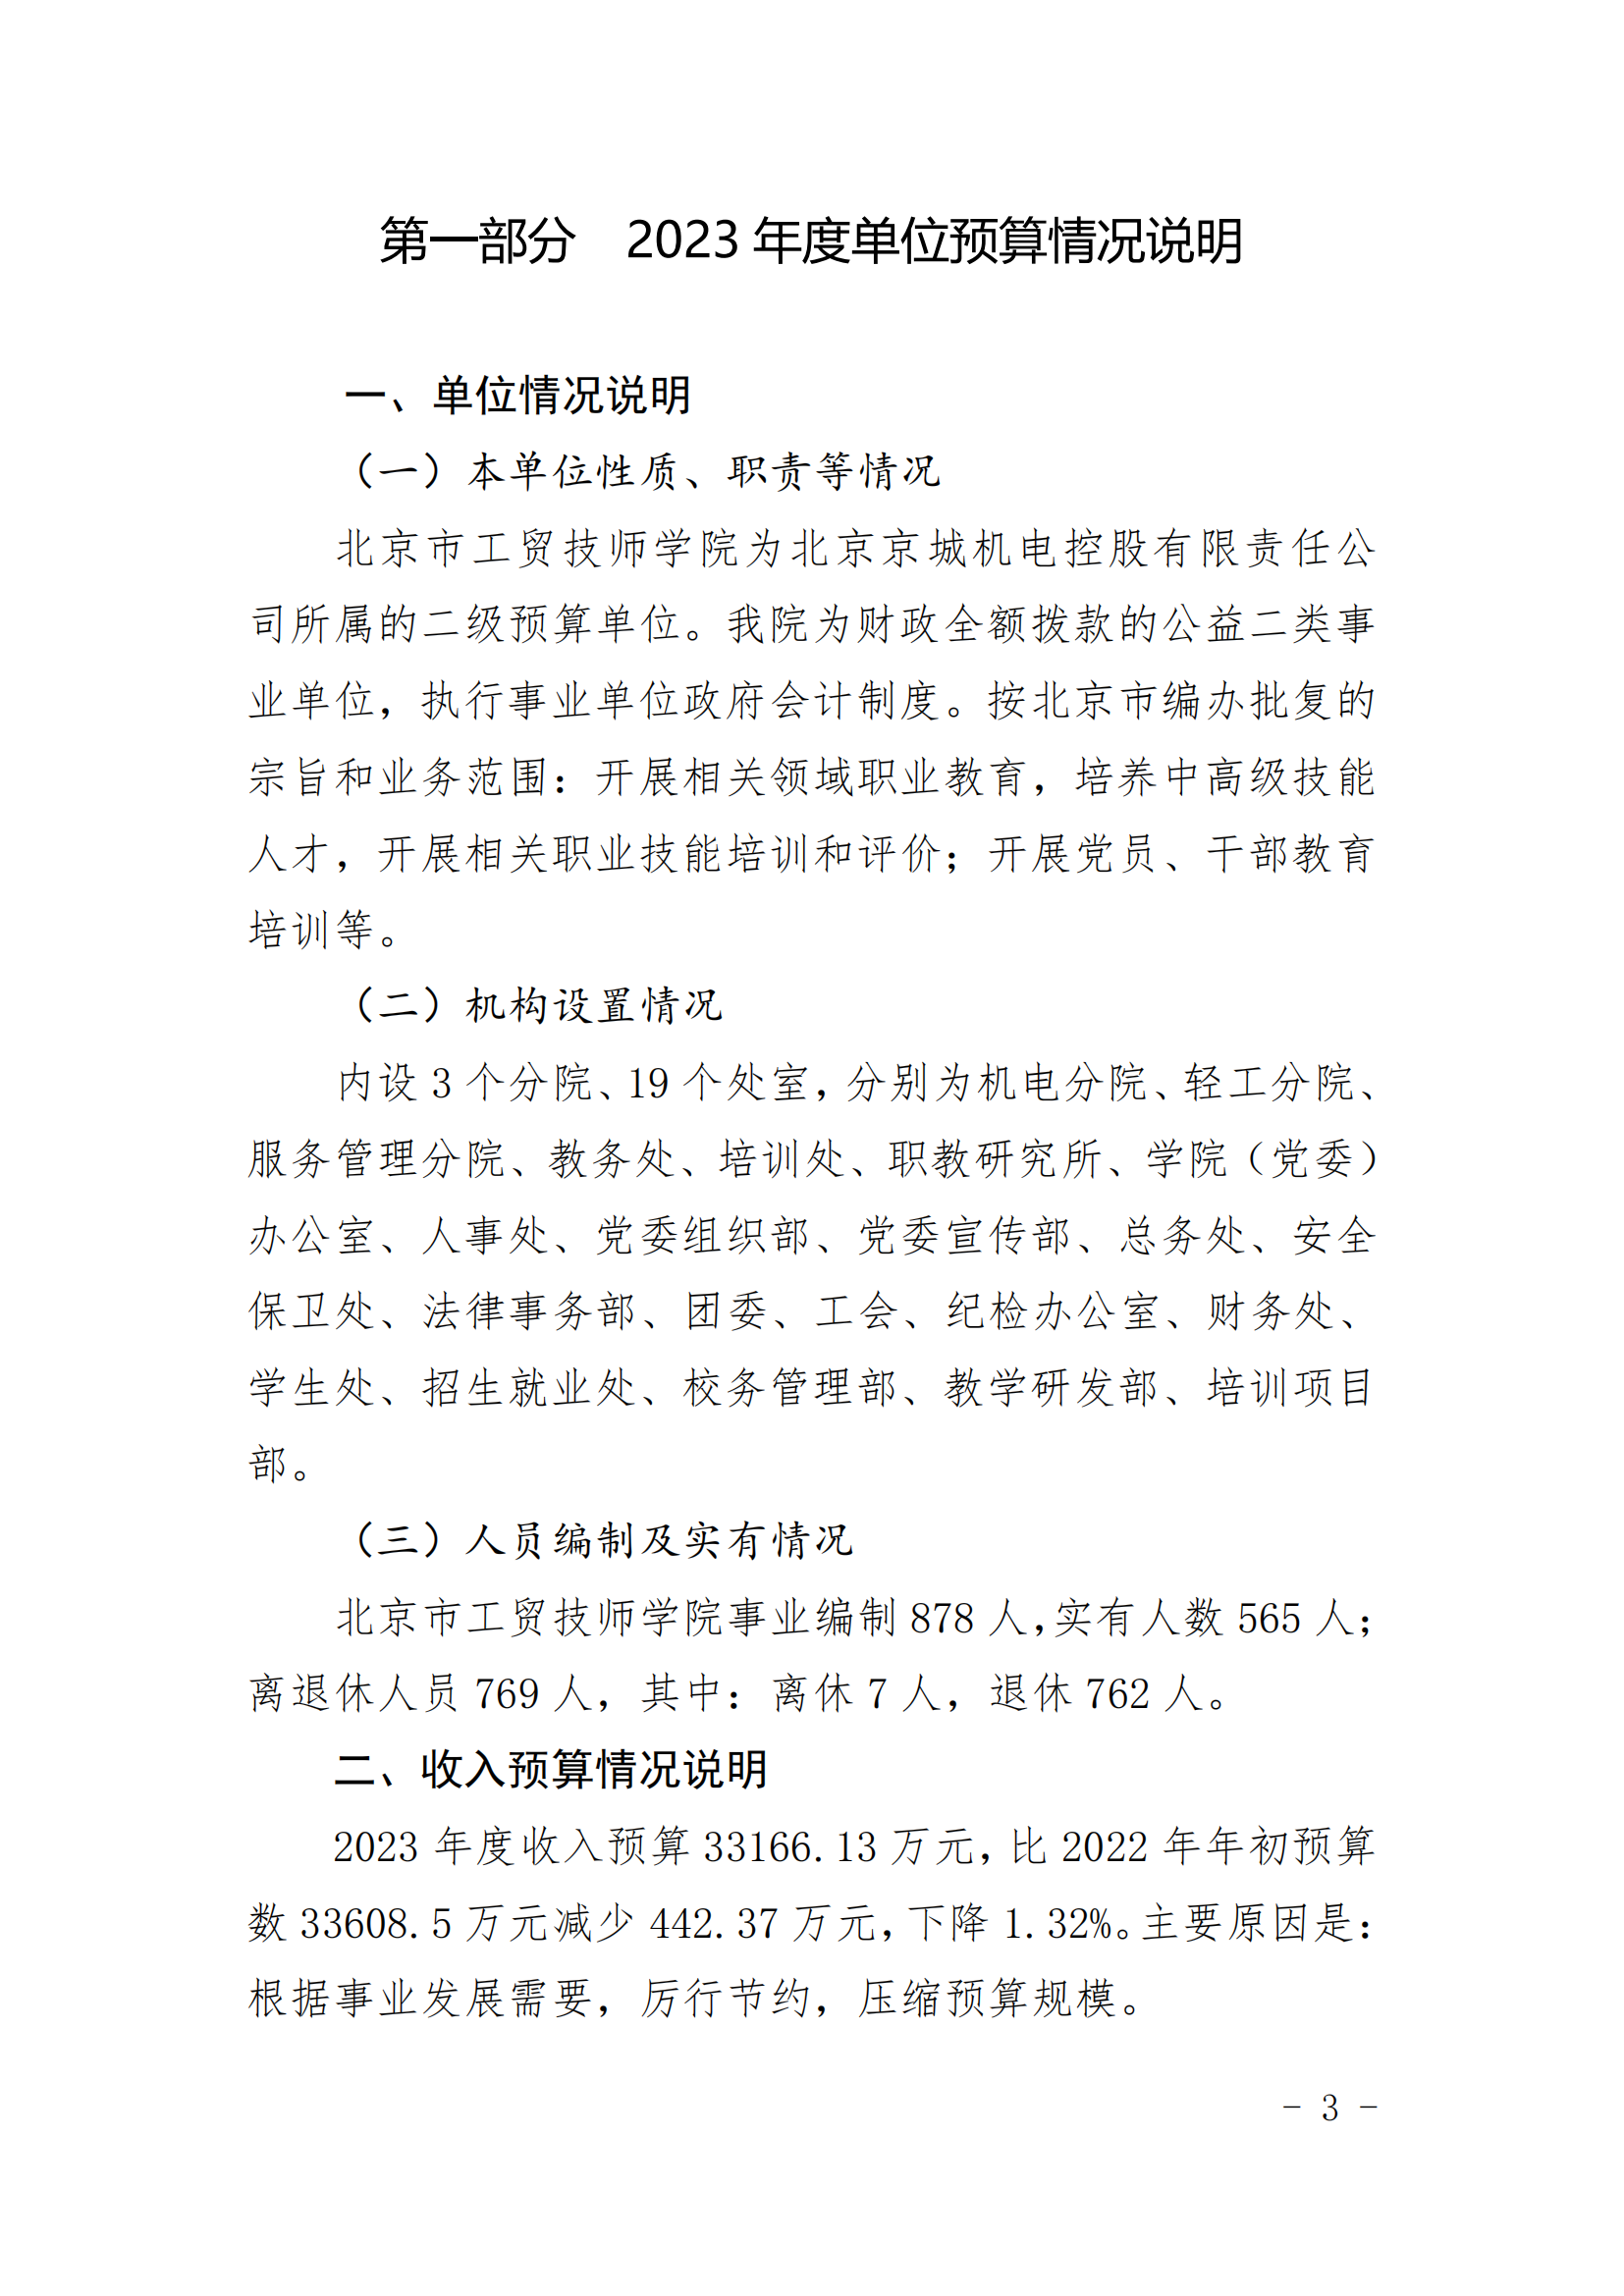 北京市工贸技师学院2023年财政预算信息公开_02.png